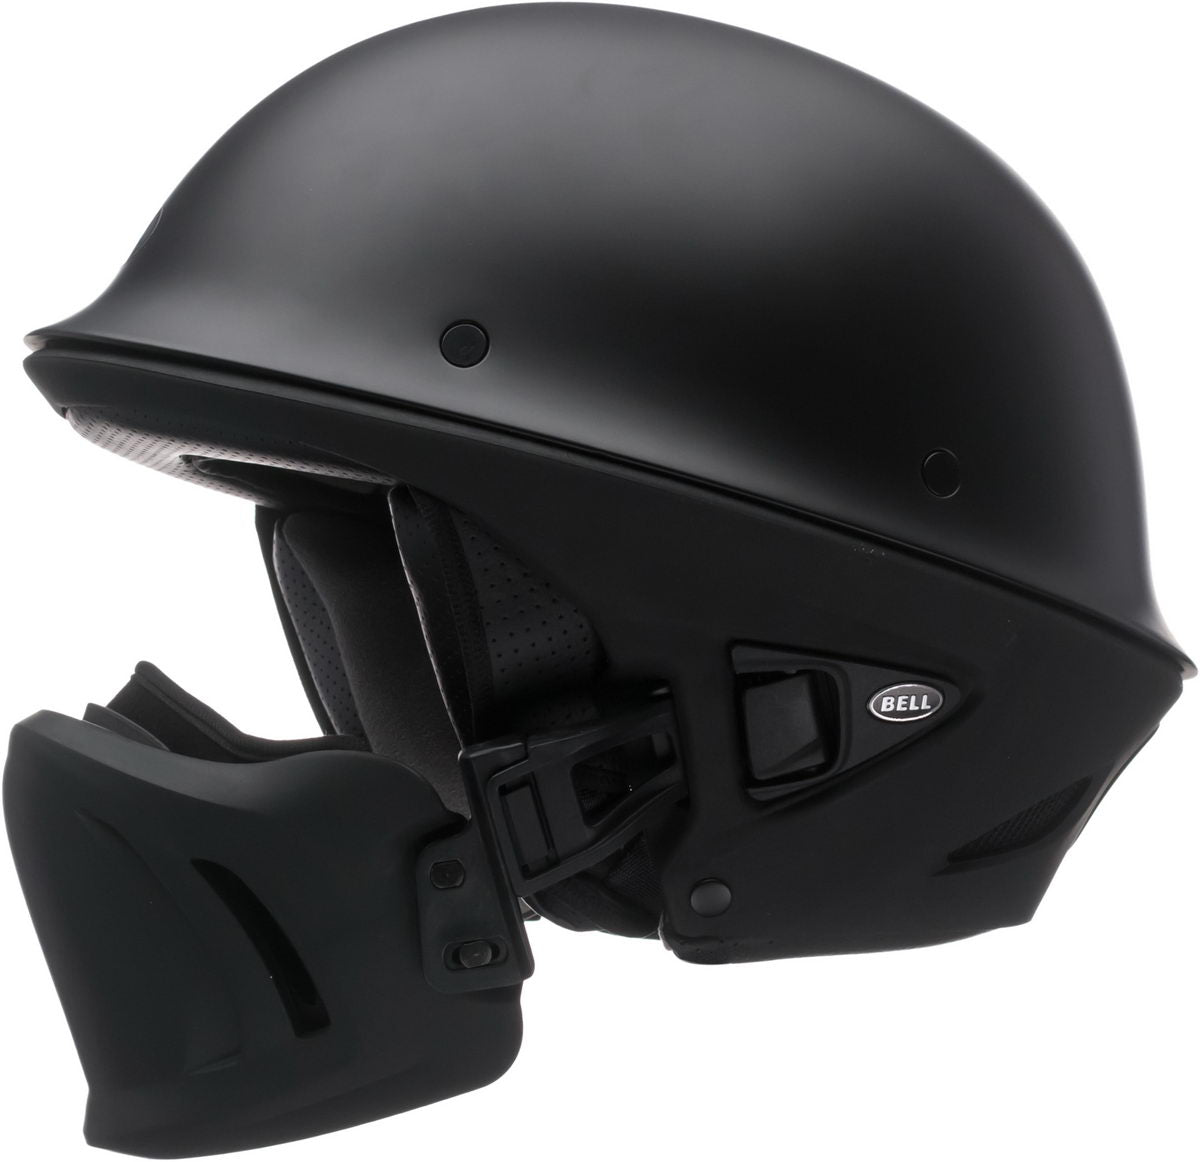 Bell Rogue 'Built Bell Tough. Innovative Muzzle' Matte Black Half Helmet